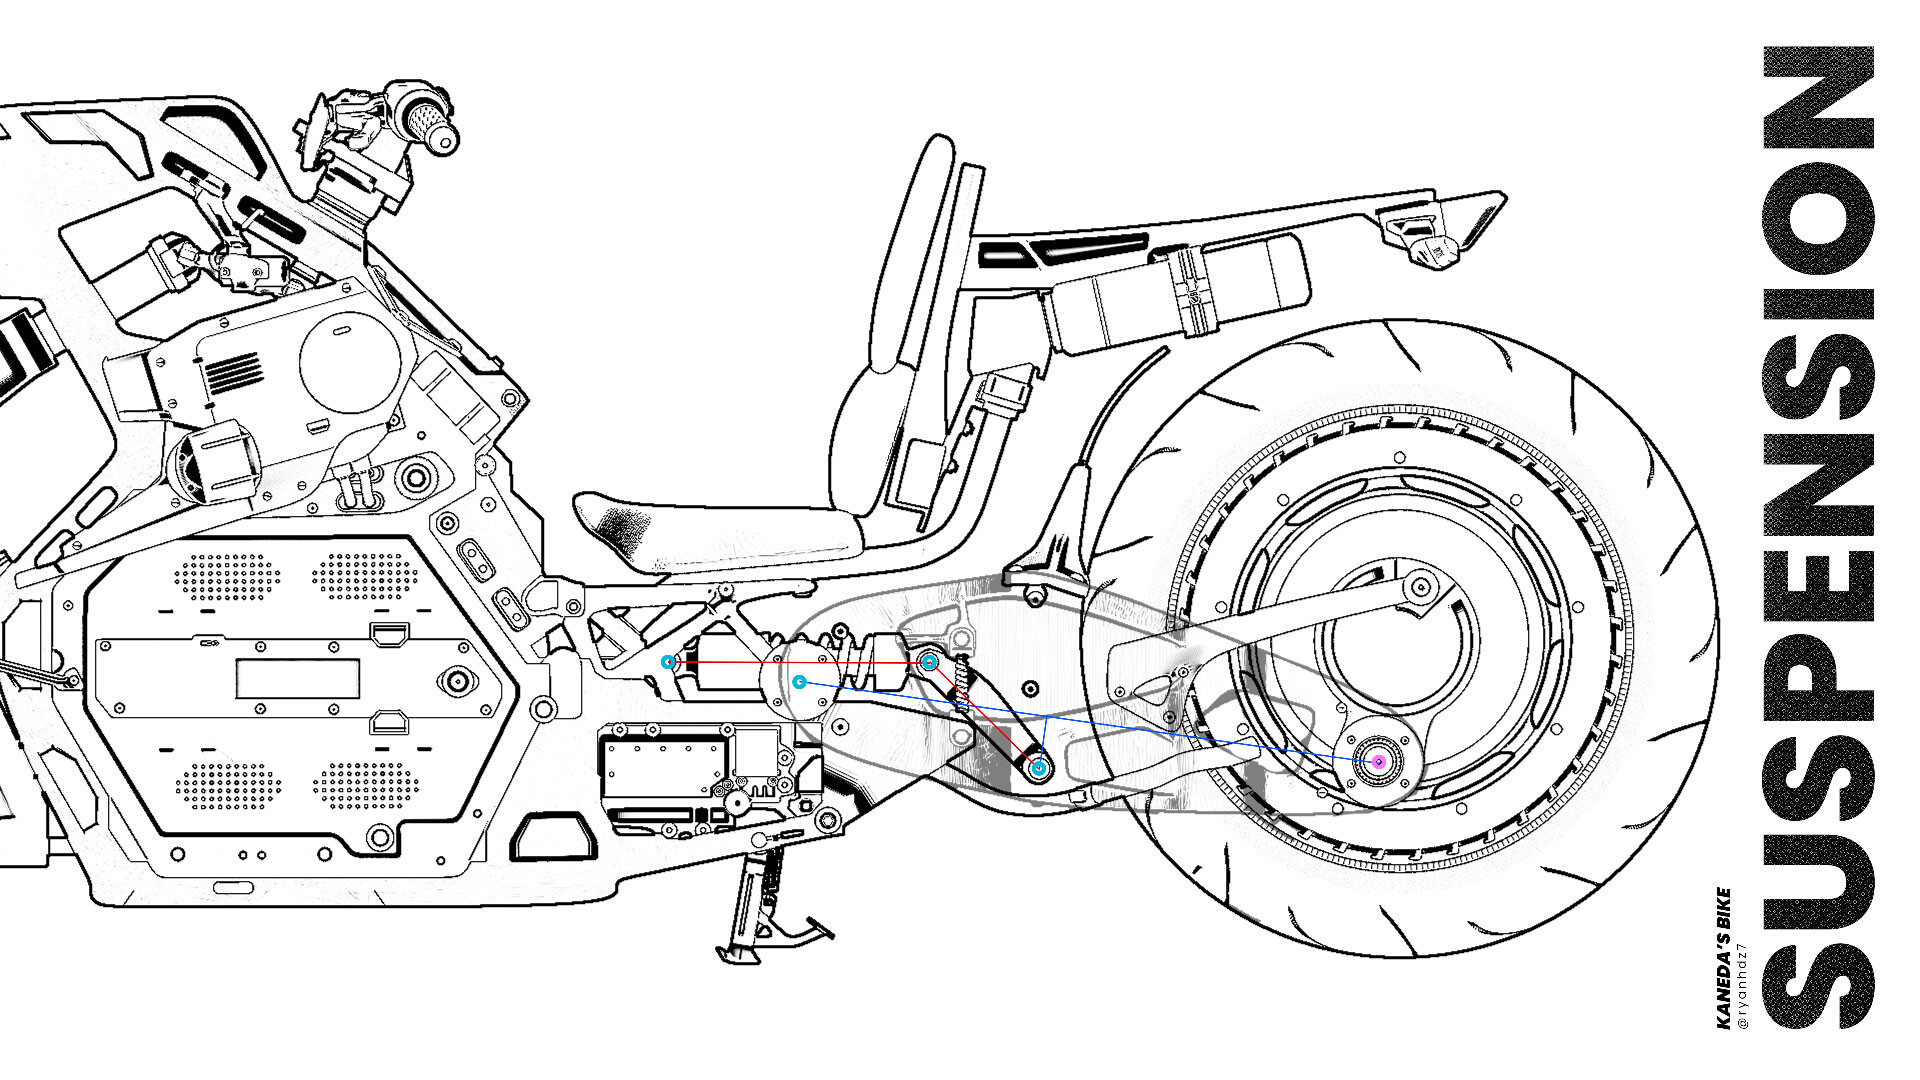 ArtStation Redesign Of Kaneda's Bike-Diagram